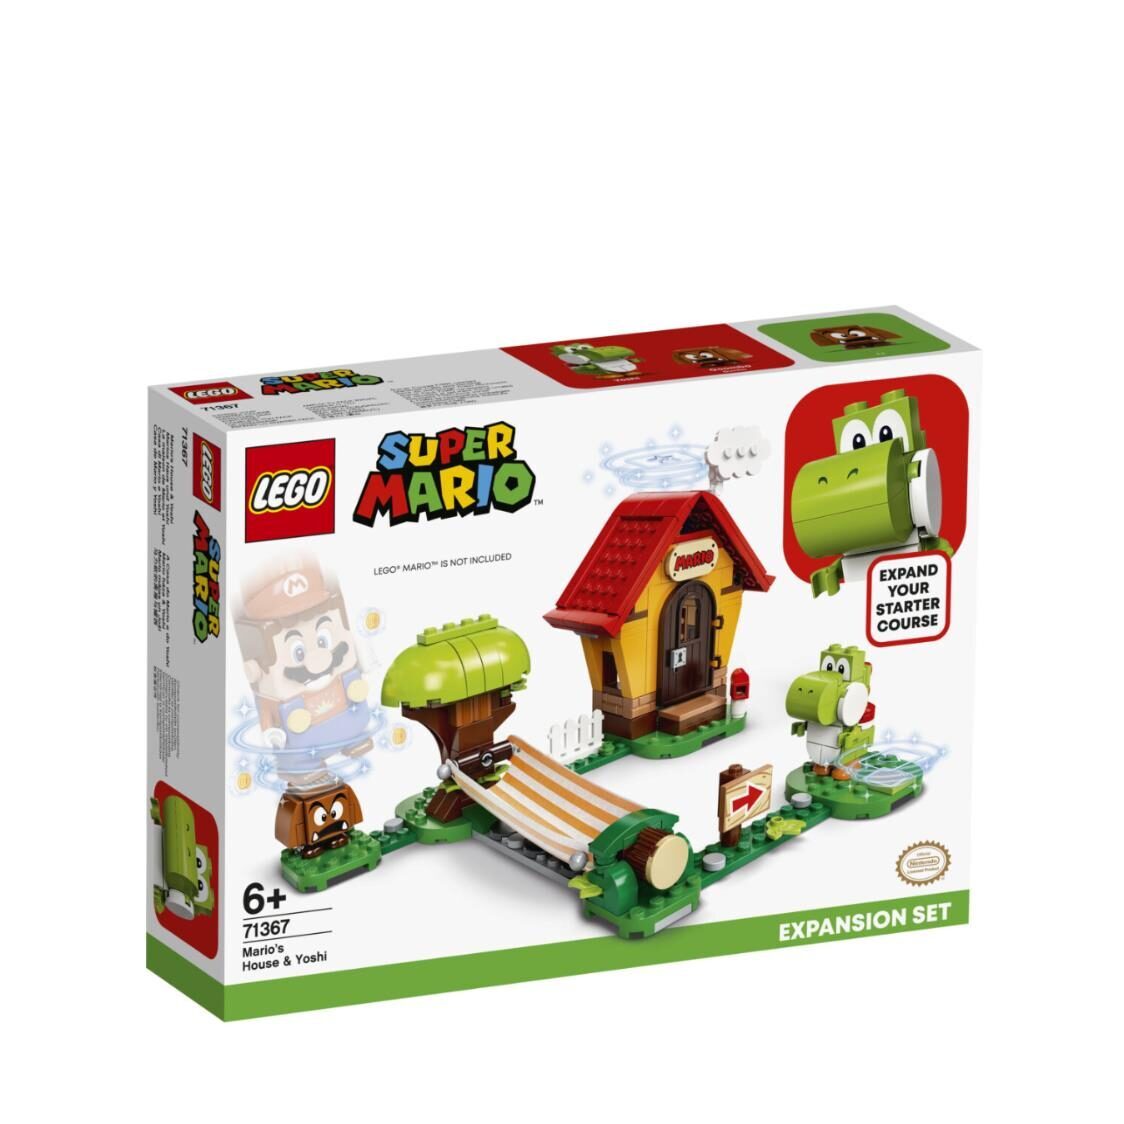 LEGO Marios House And Yoshi Expansion Set 71367